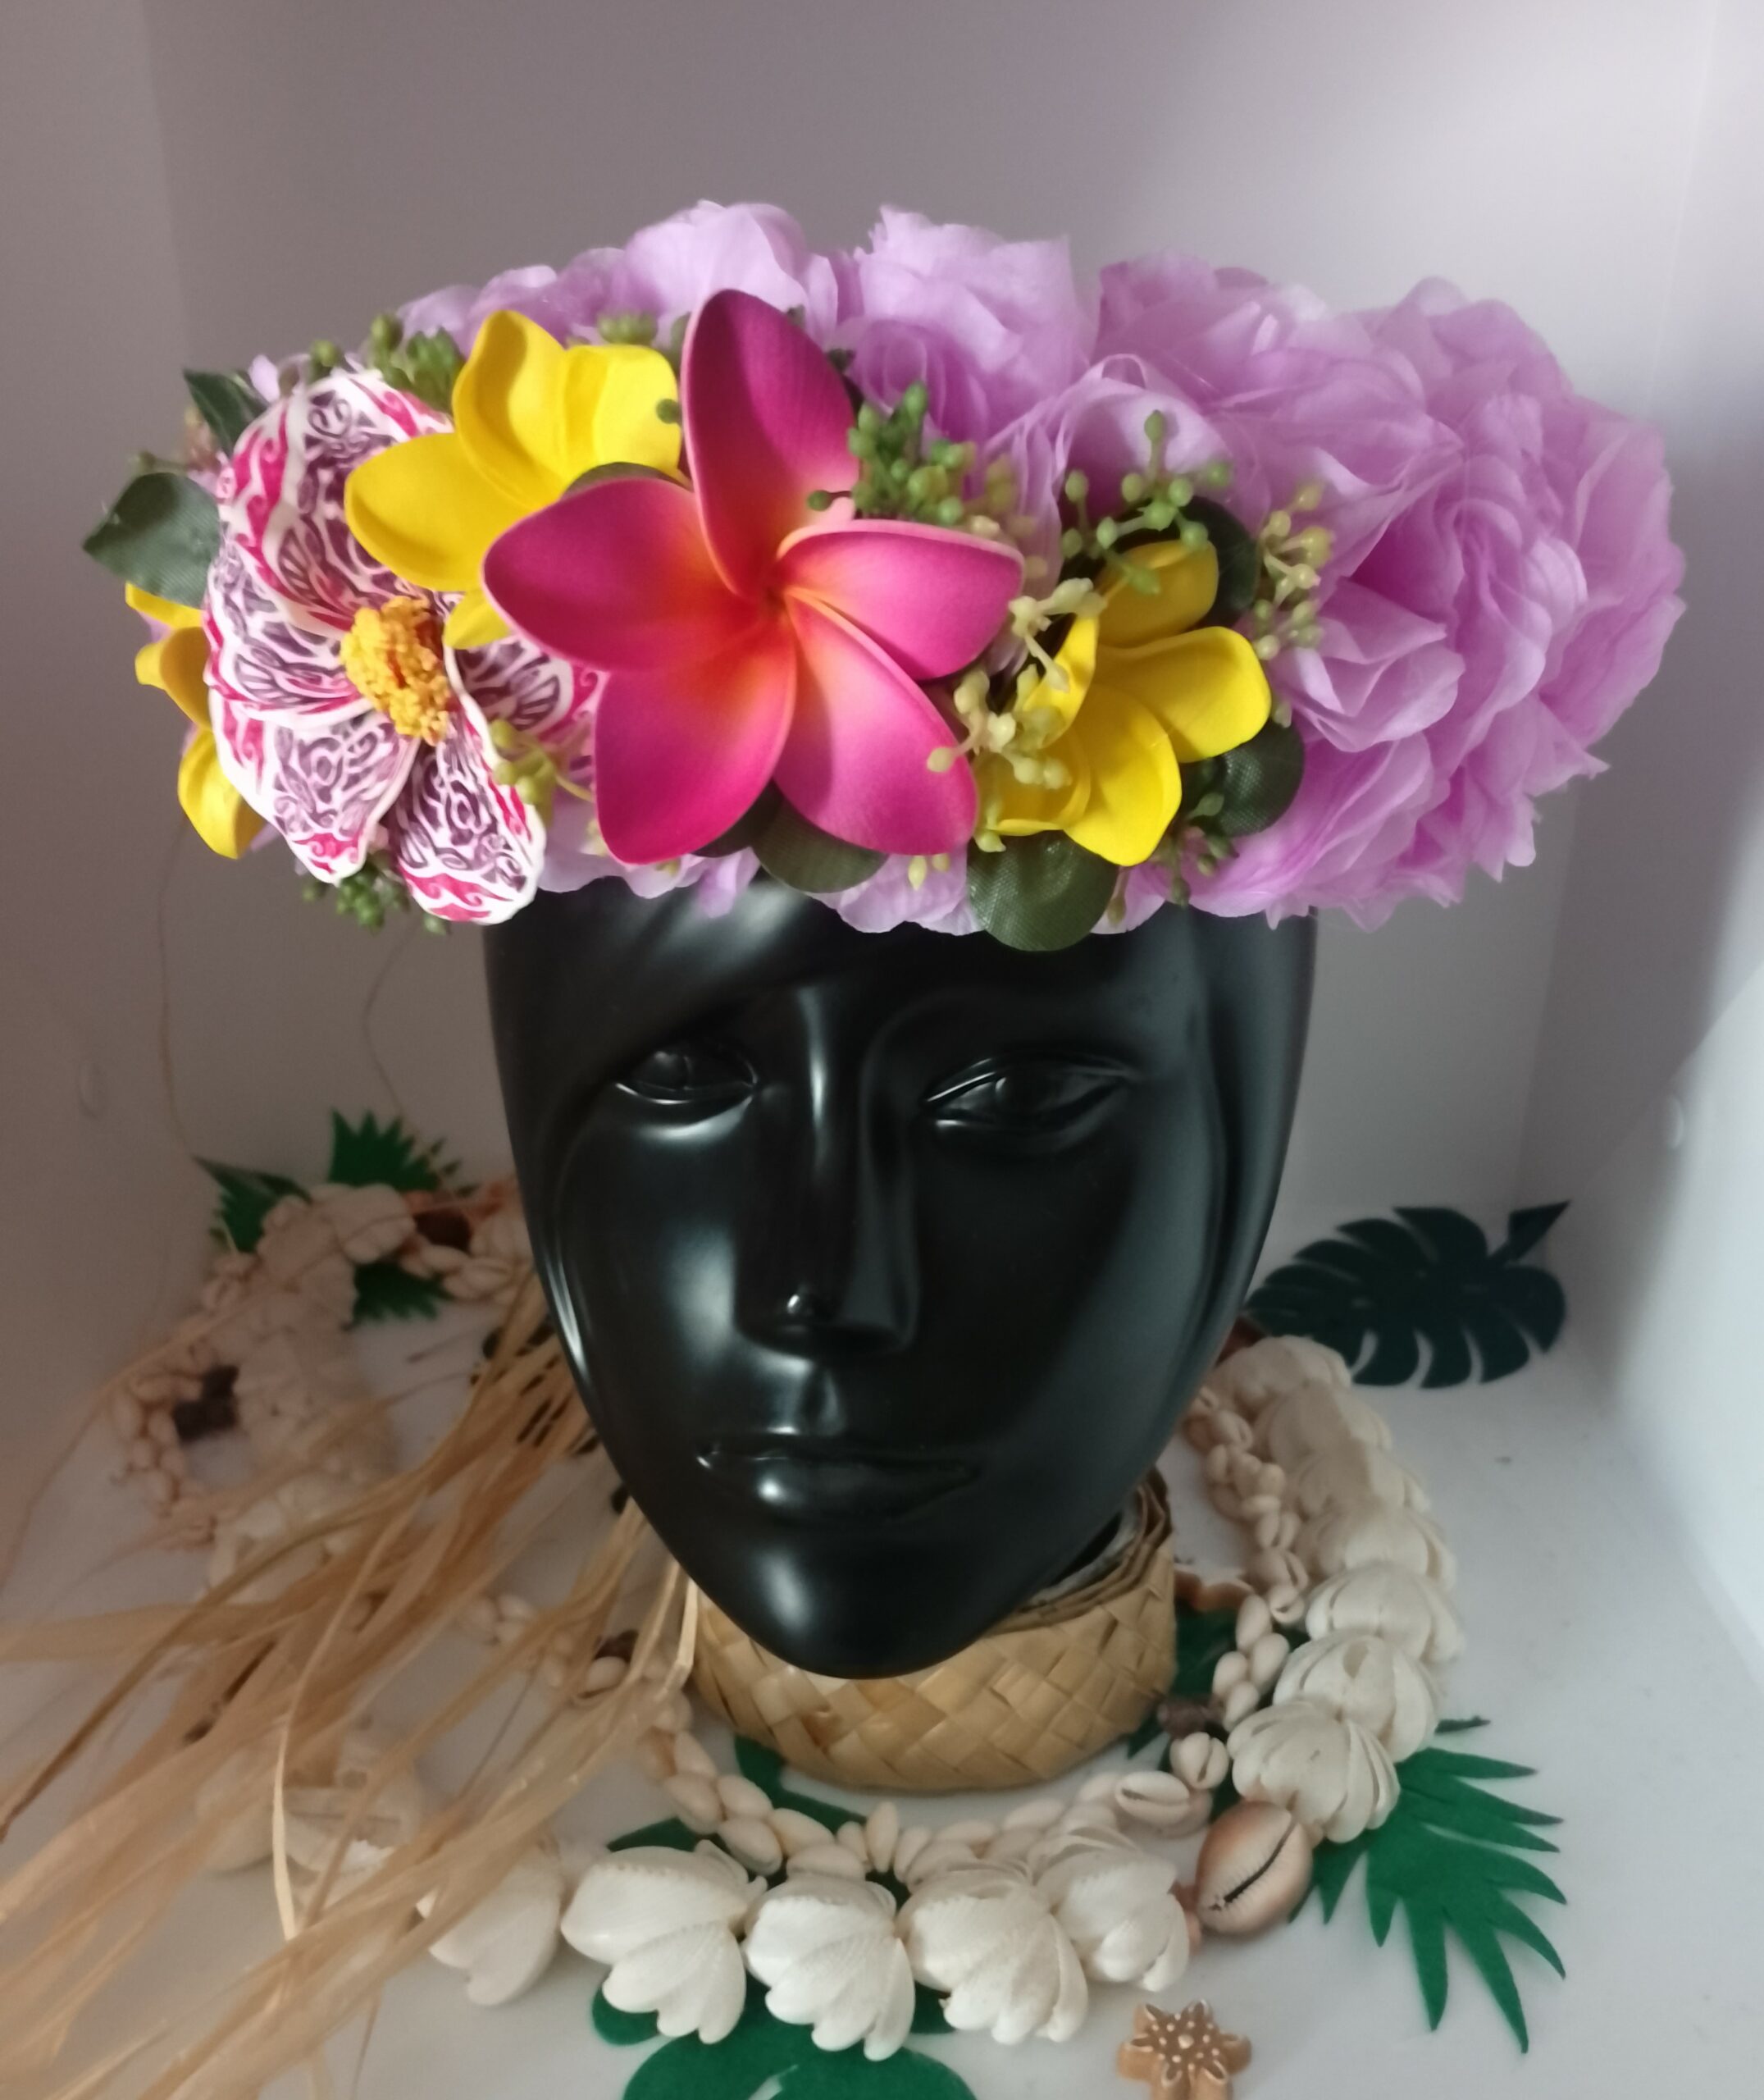 couronne de tête fleurs tahiti mauve trois minis frangipaniers jaunes hibiscus tatoué grand tipanier by Vaite.e.Tiare créations